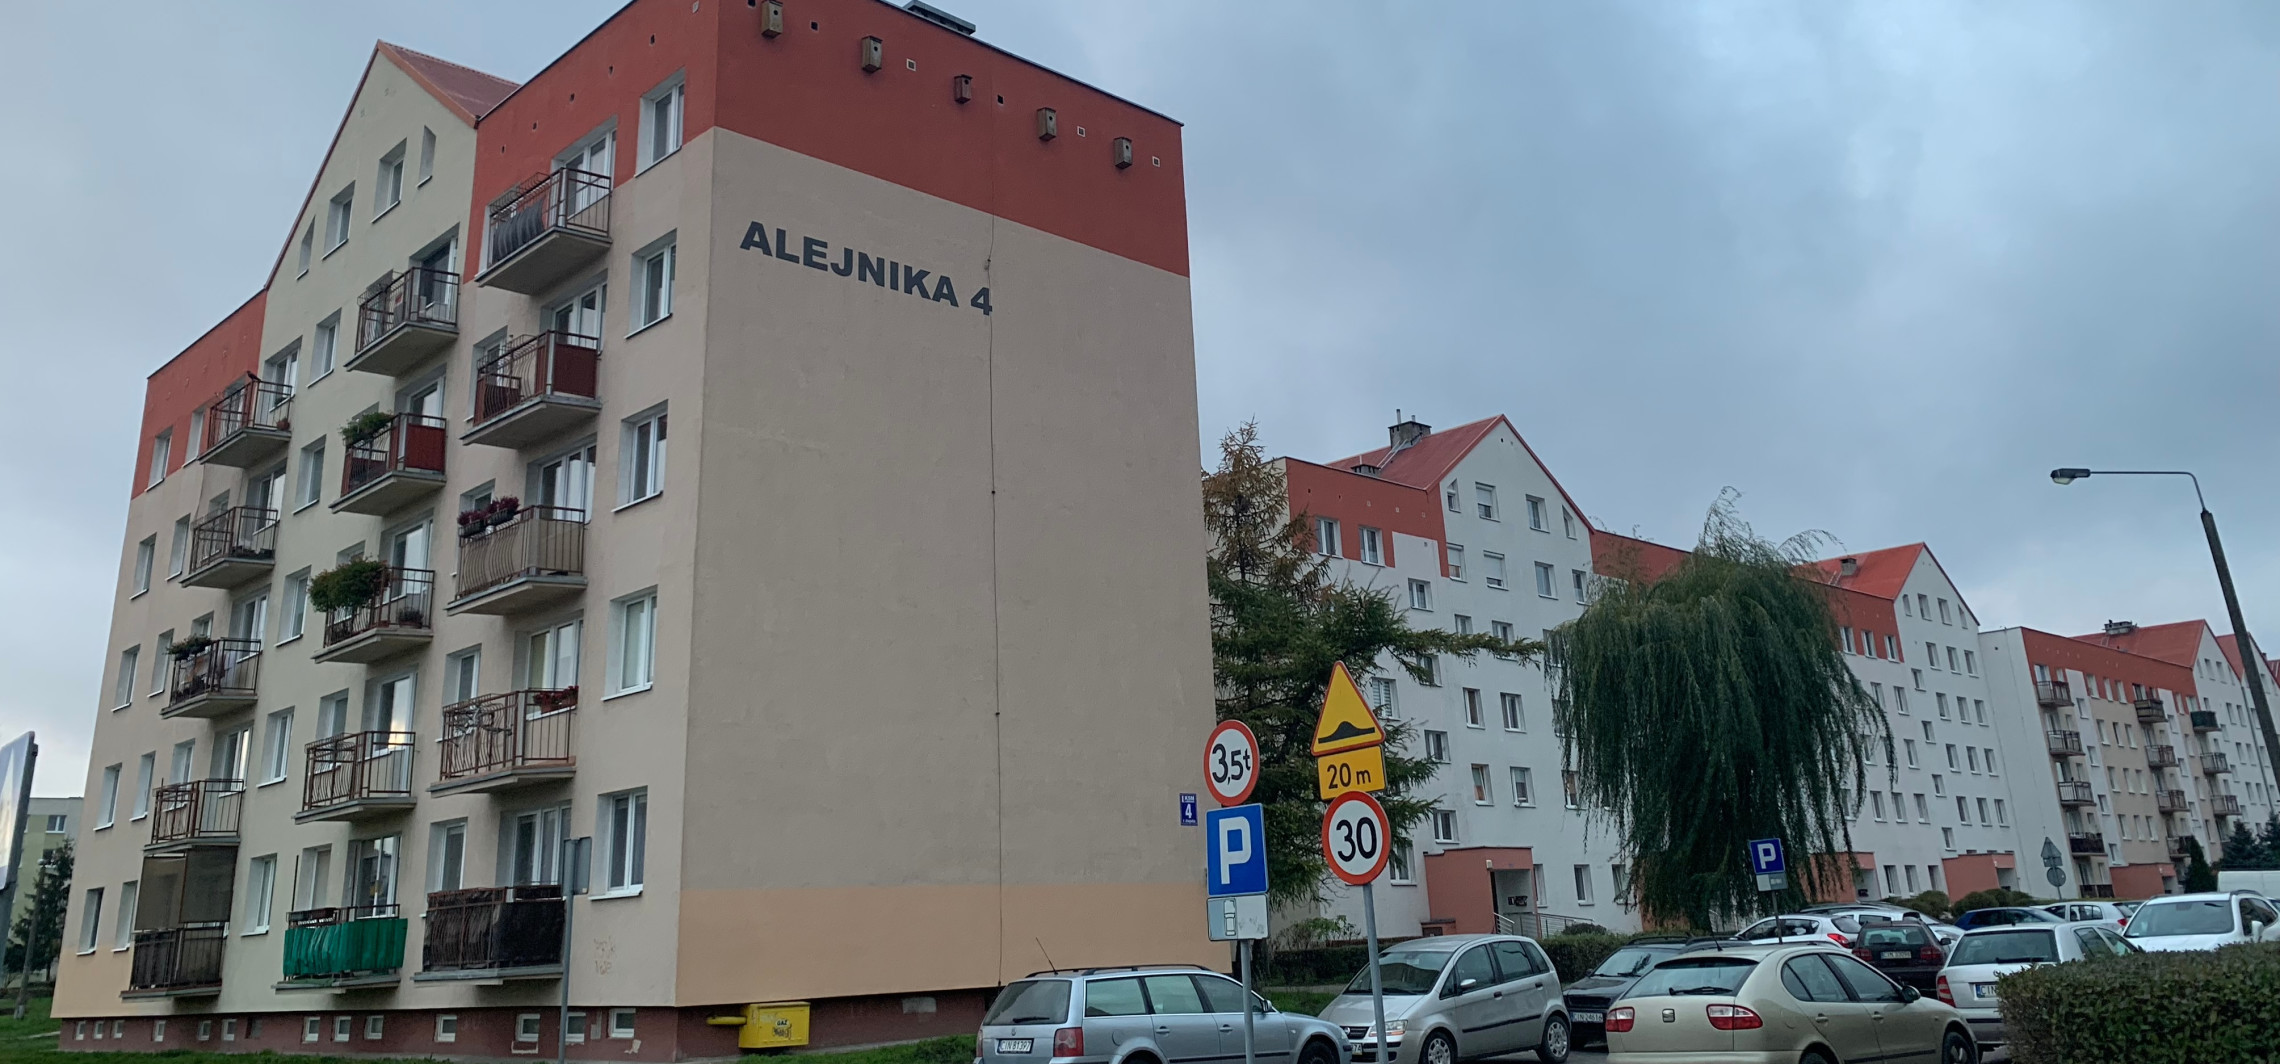 Inowrocław - Jest ostateczna decyzja ws. nazwy ulicy Alejnika